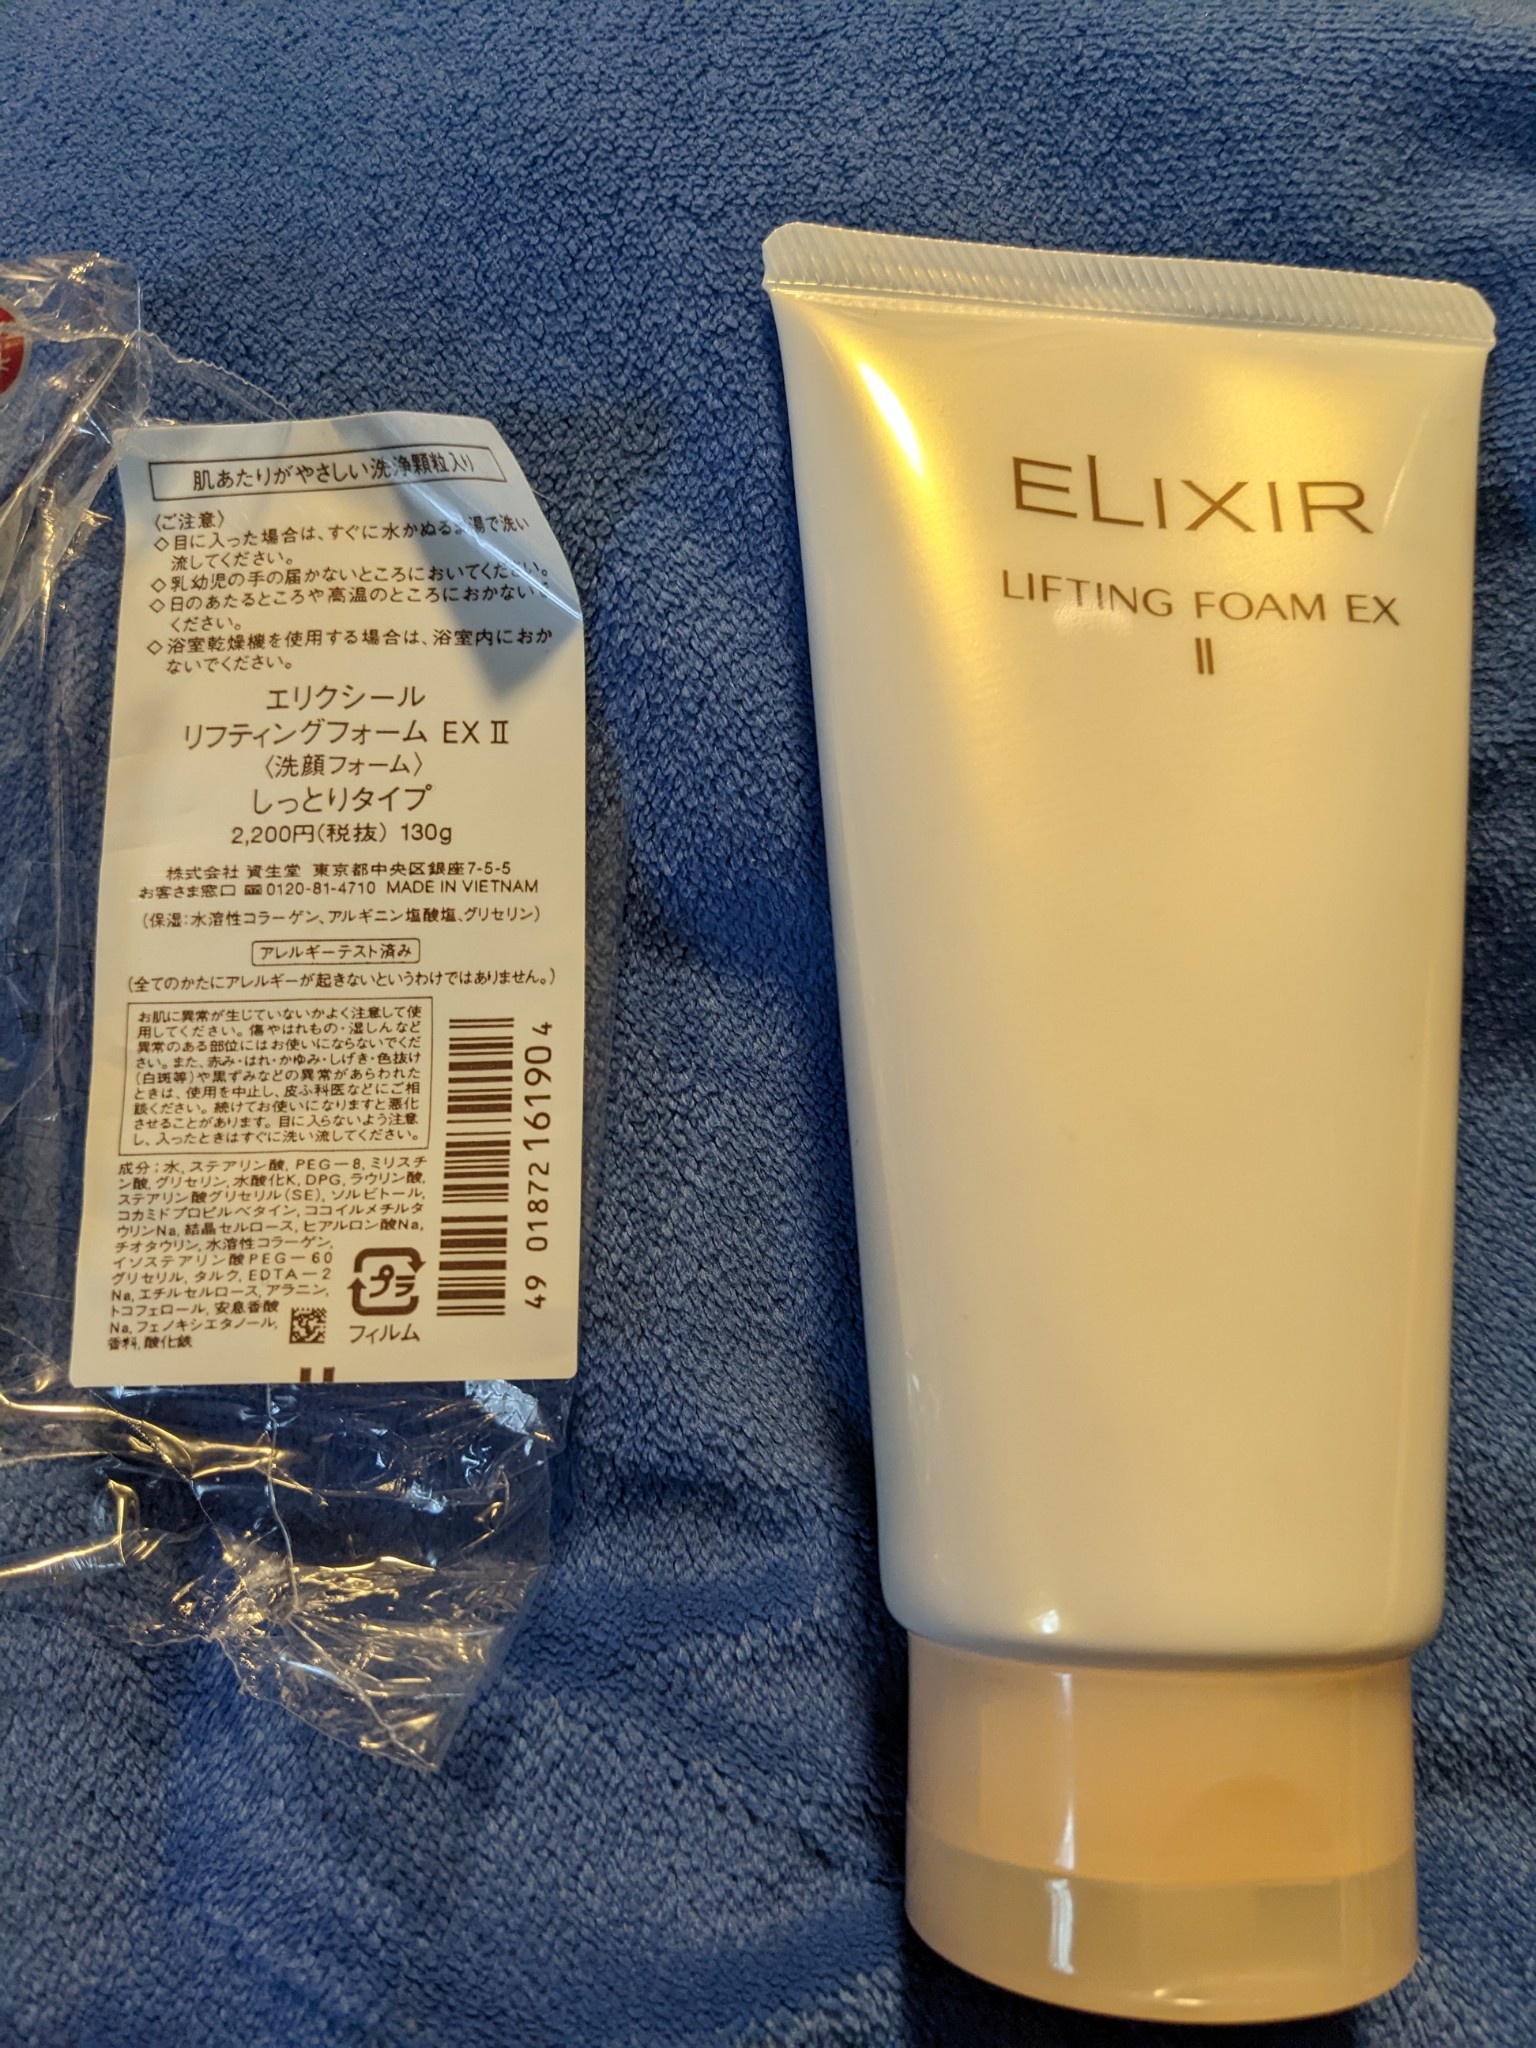 エリクシール / エリクシール リフティングフォーム EX llの公式商品 